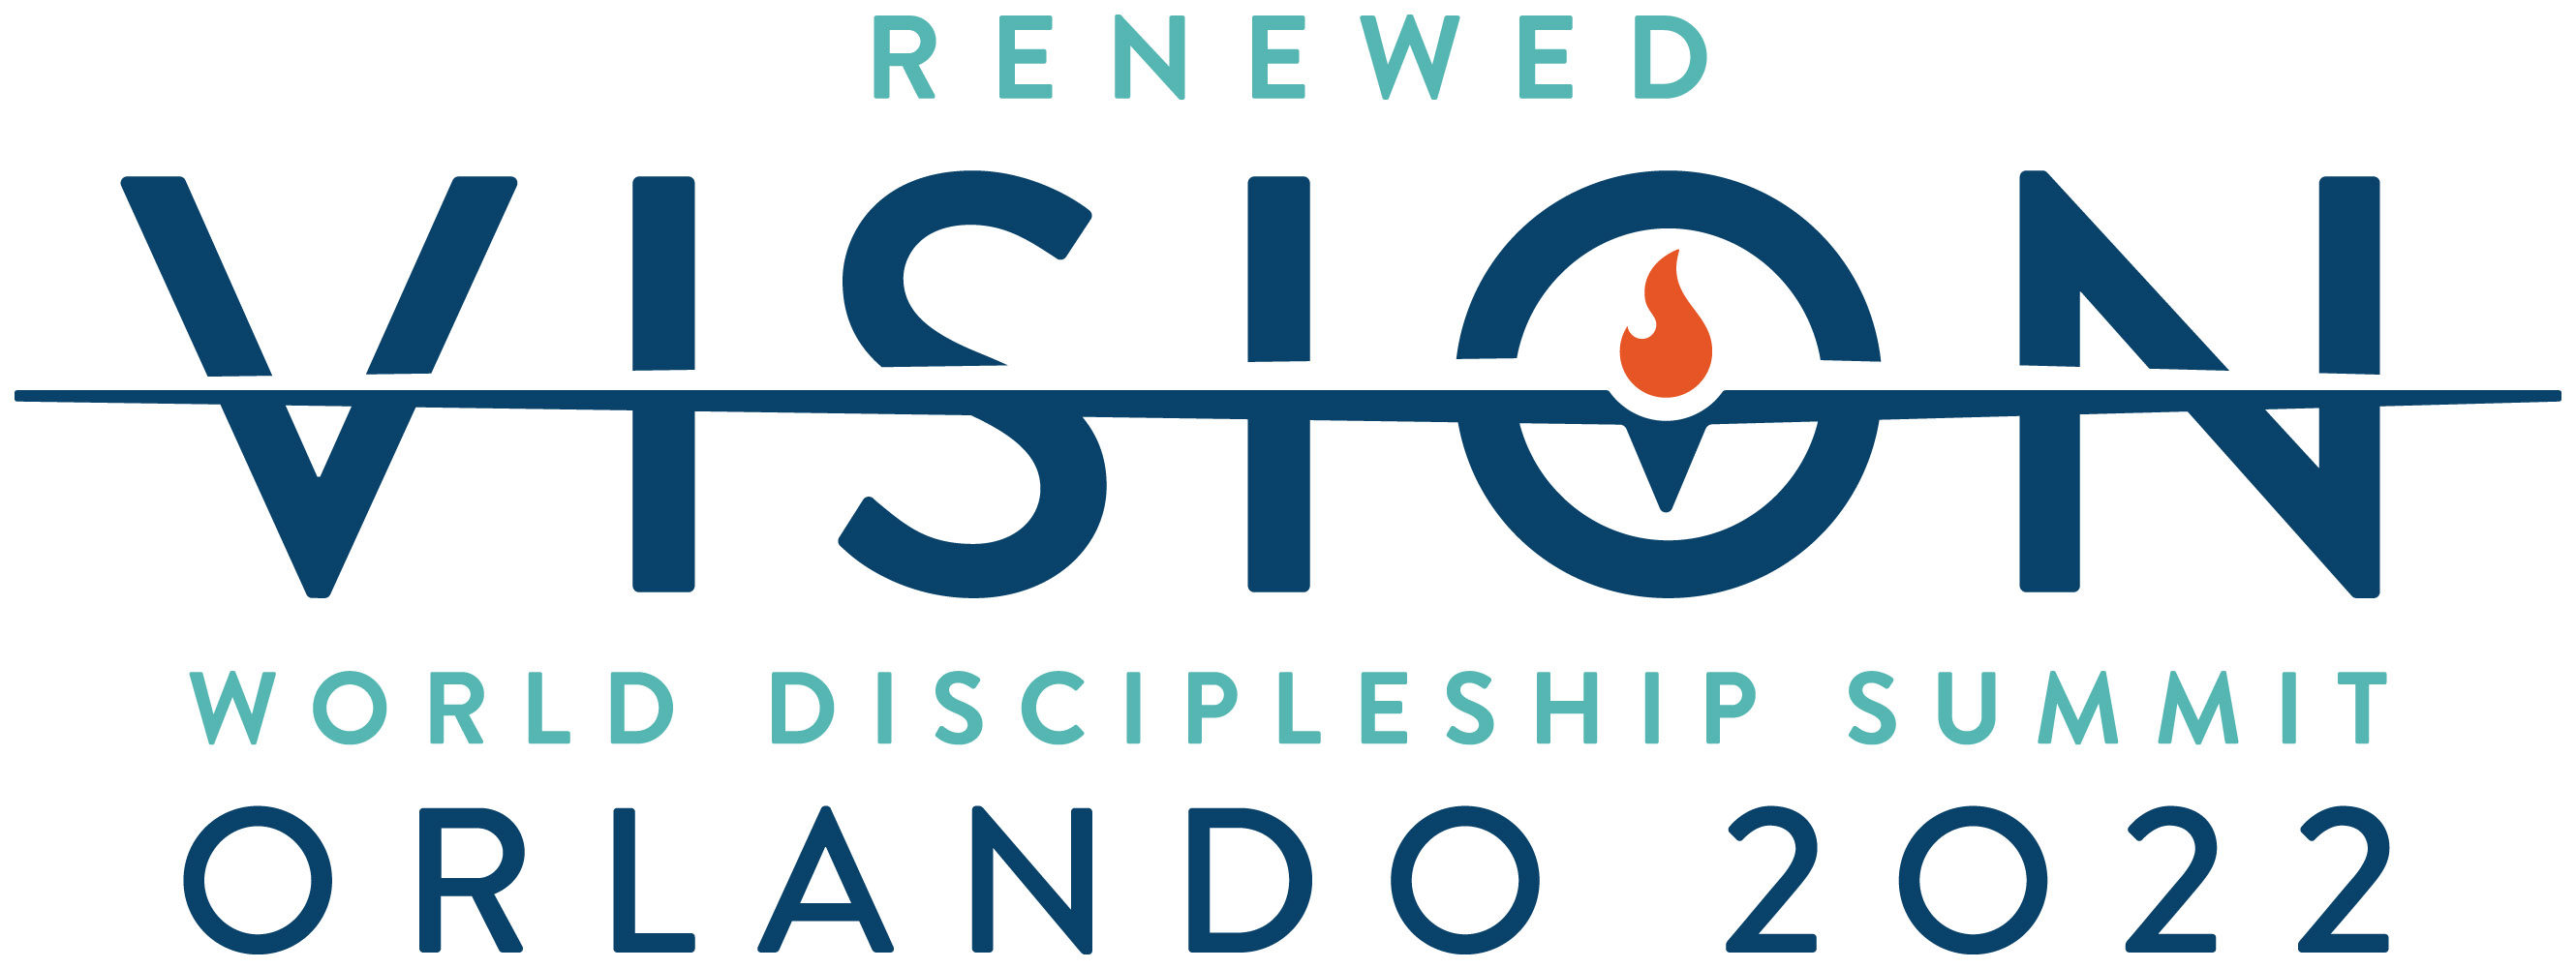 World Discipleship Summit